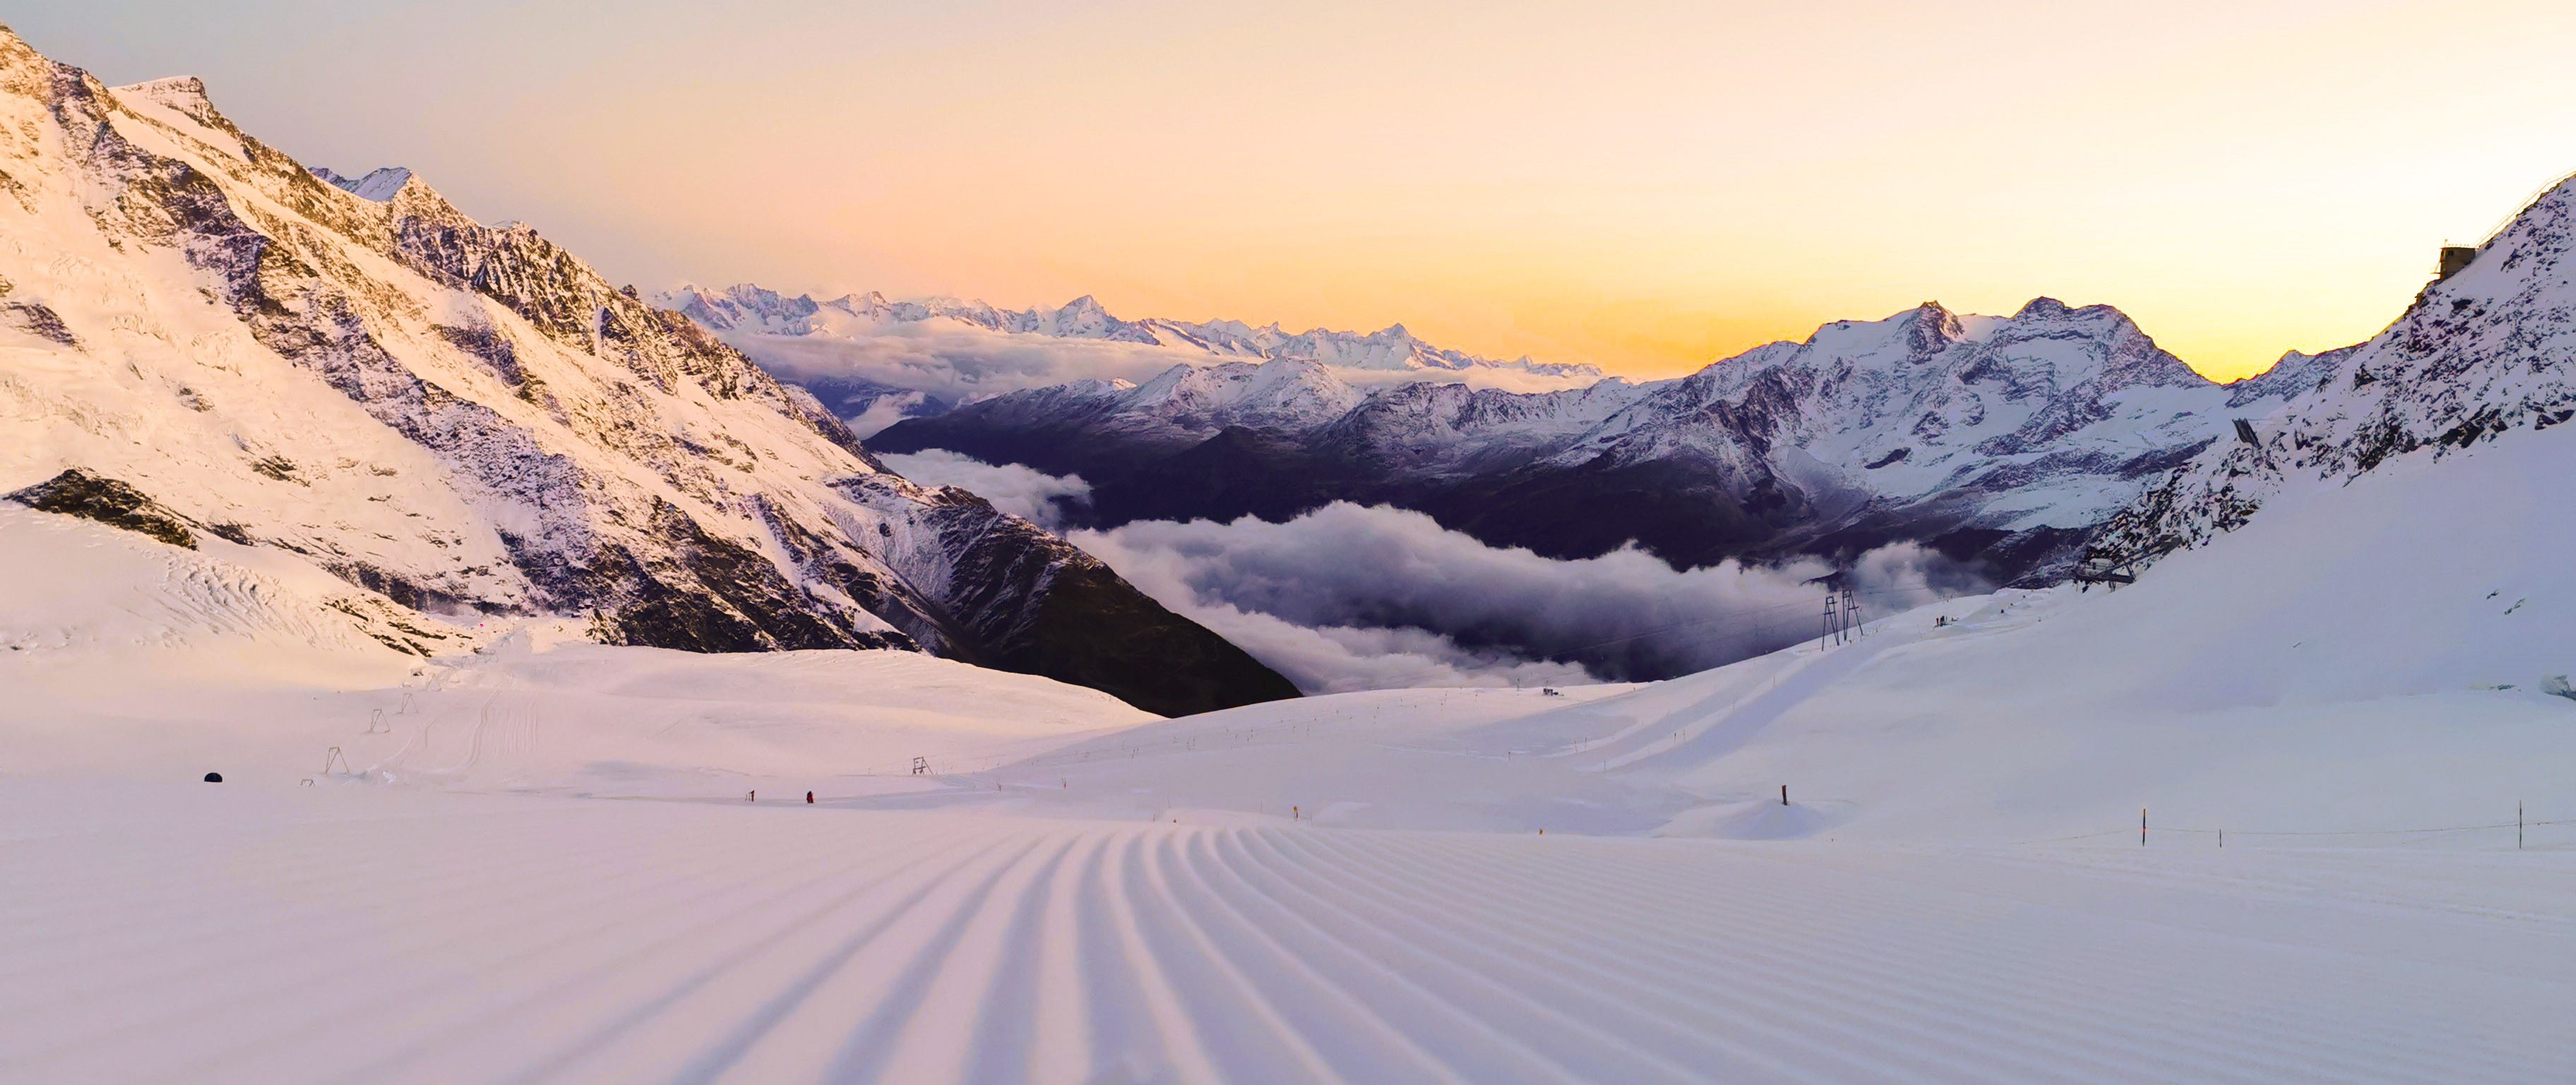 Ski fahren, Snowboard fahren, Saas-Fee/Saastal, Ski Saas-Fee, Winter Saas-Fee, Sunrise, Sunrise skiing, Sunrise Saas-Fee